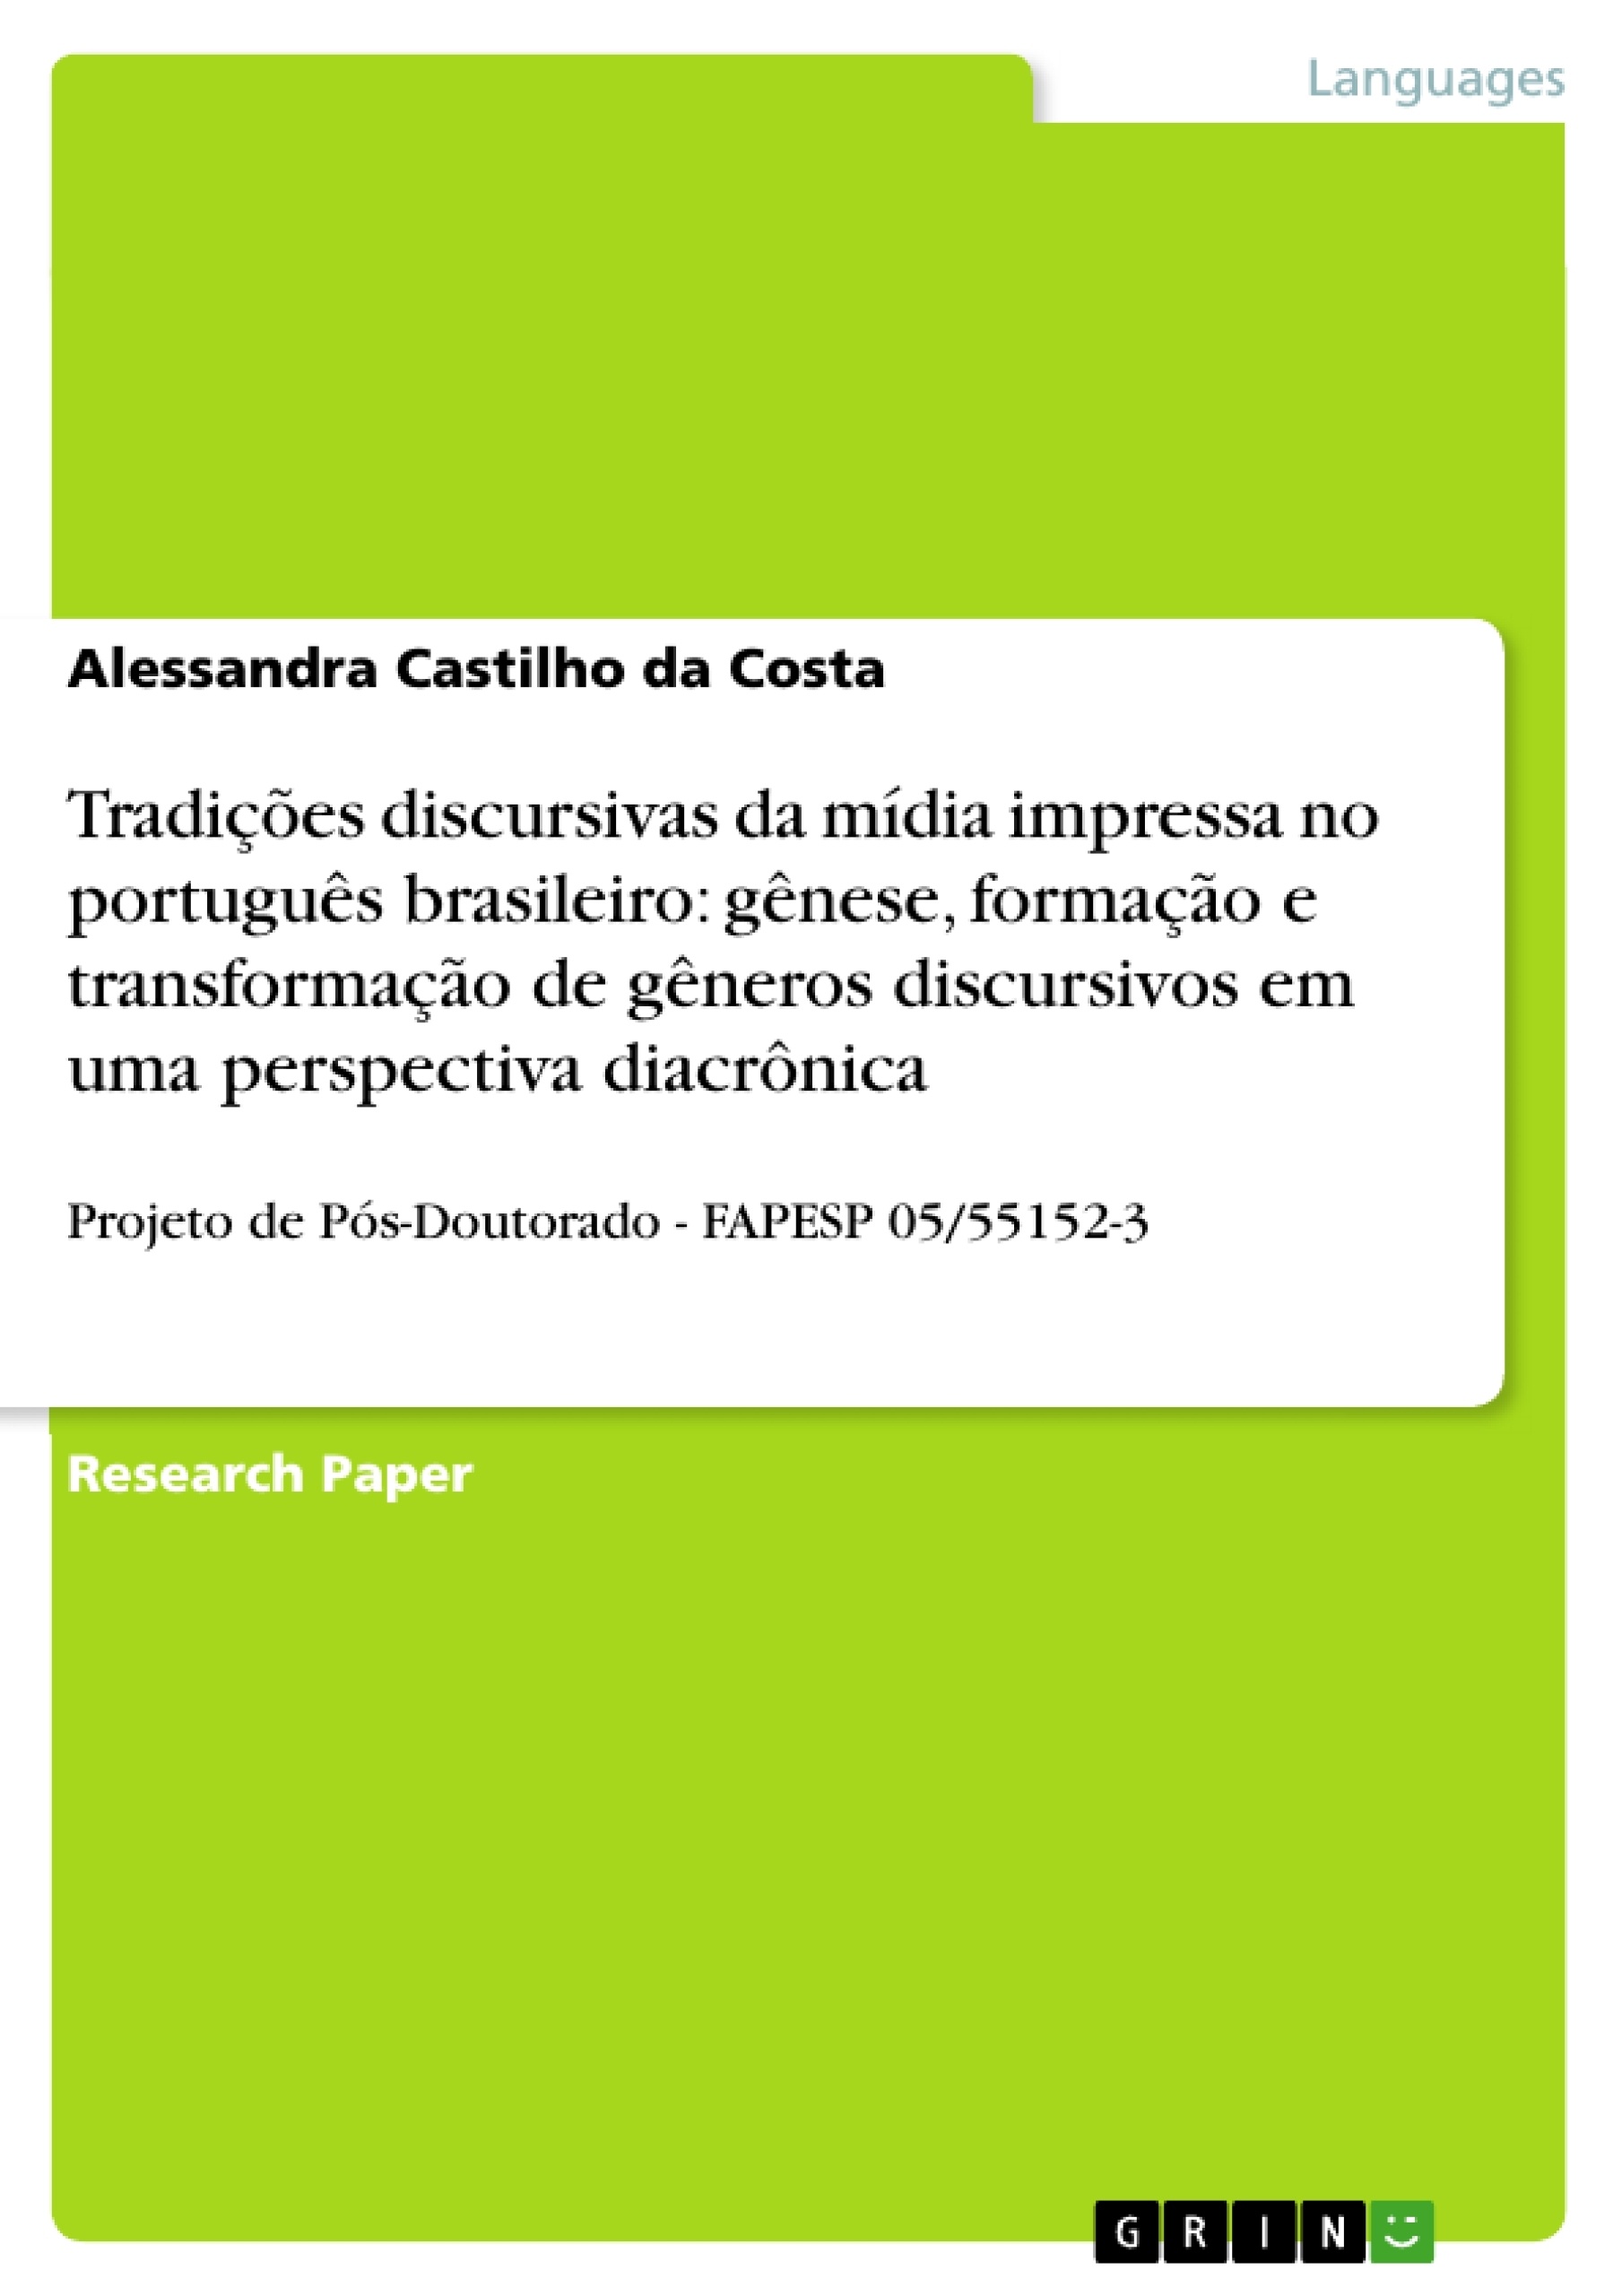 Título: Tradições discursivas da mídia impressa no português brasileiro: gênese, formação e transformação de gêneros discursivos em uma perspectiva diacrônica